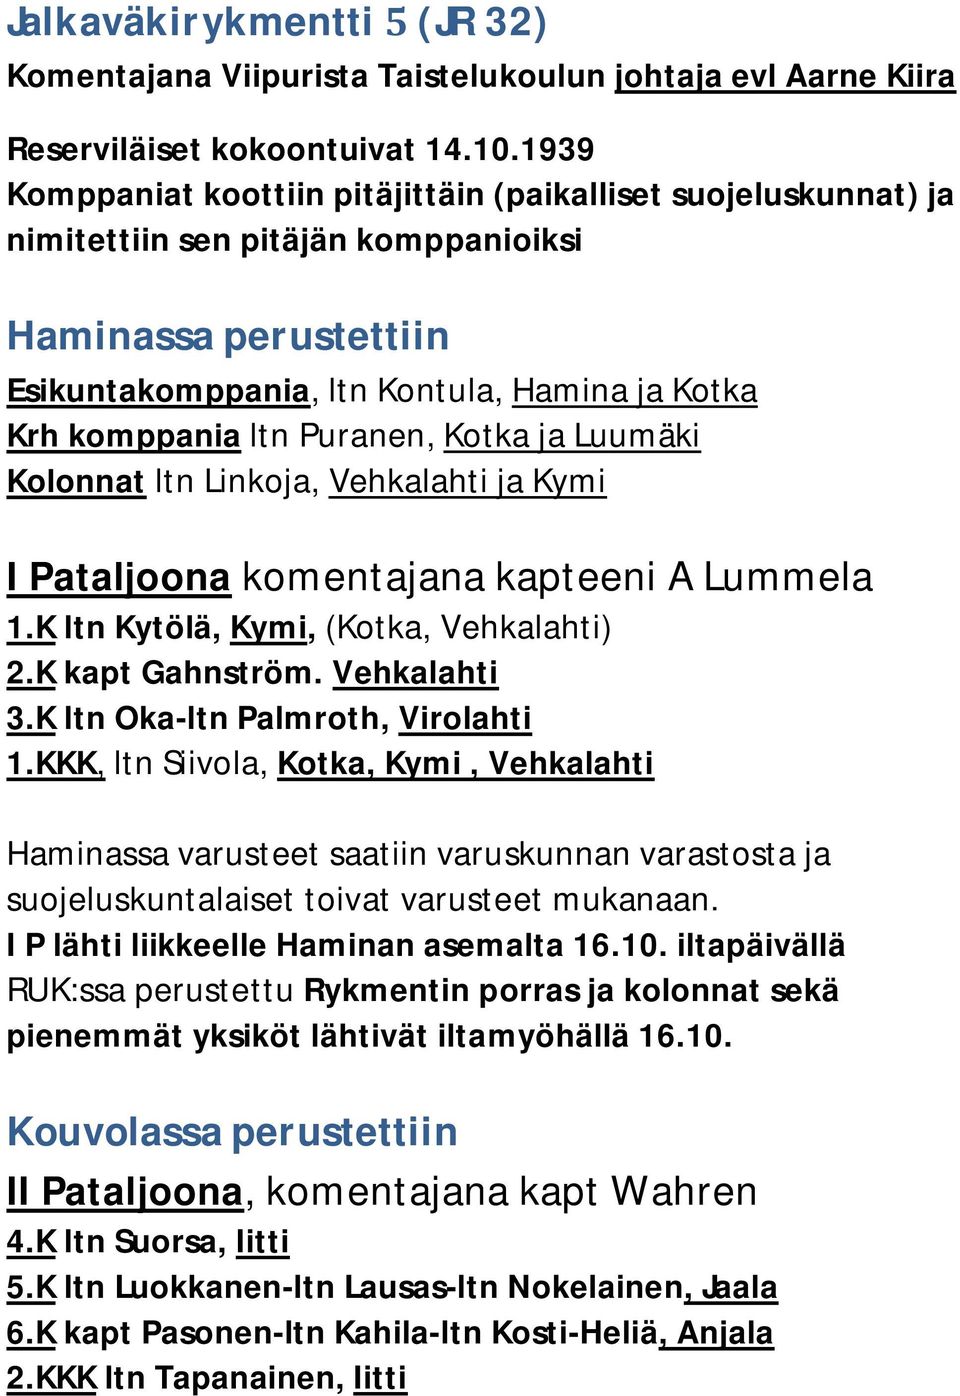 Puranen, Kotka ja Luumäki Kolonnat ltn Linkoja, Vehkalahti ja Kymi I Pataljoona komentajana kapteeni A Lummela 1.K ltn Kytölä, Kymi, (Kotka, Vehkalahti) 2.K kapt Gahnström. Vehkalahti 3.